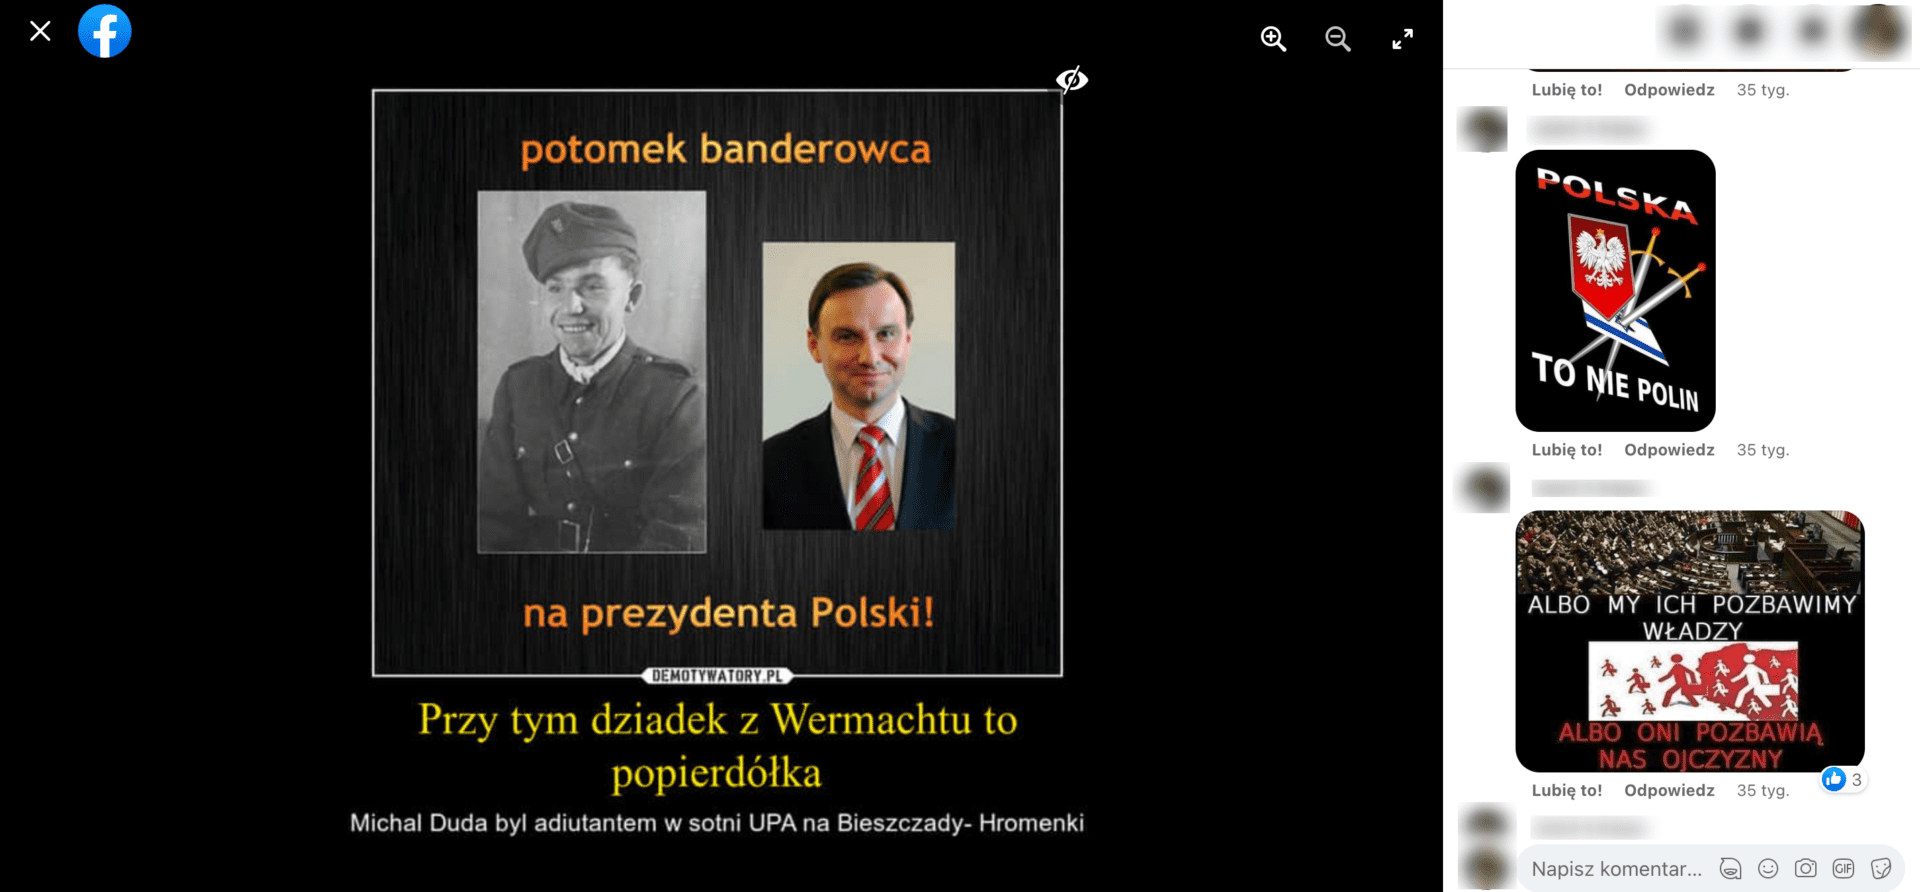 Zrzut ekranu posta, w którym zamieszczono informację, że Andrzej Duda ma ukraińskie korzenie. Widoczne są komentarze, w których udostępniono obrazki z napisami o treści: „Polska to nie Polin” i „albo my ich pozbawimy władzy, albo oni pozbawią nas ojczyzny”.